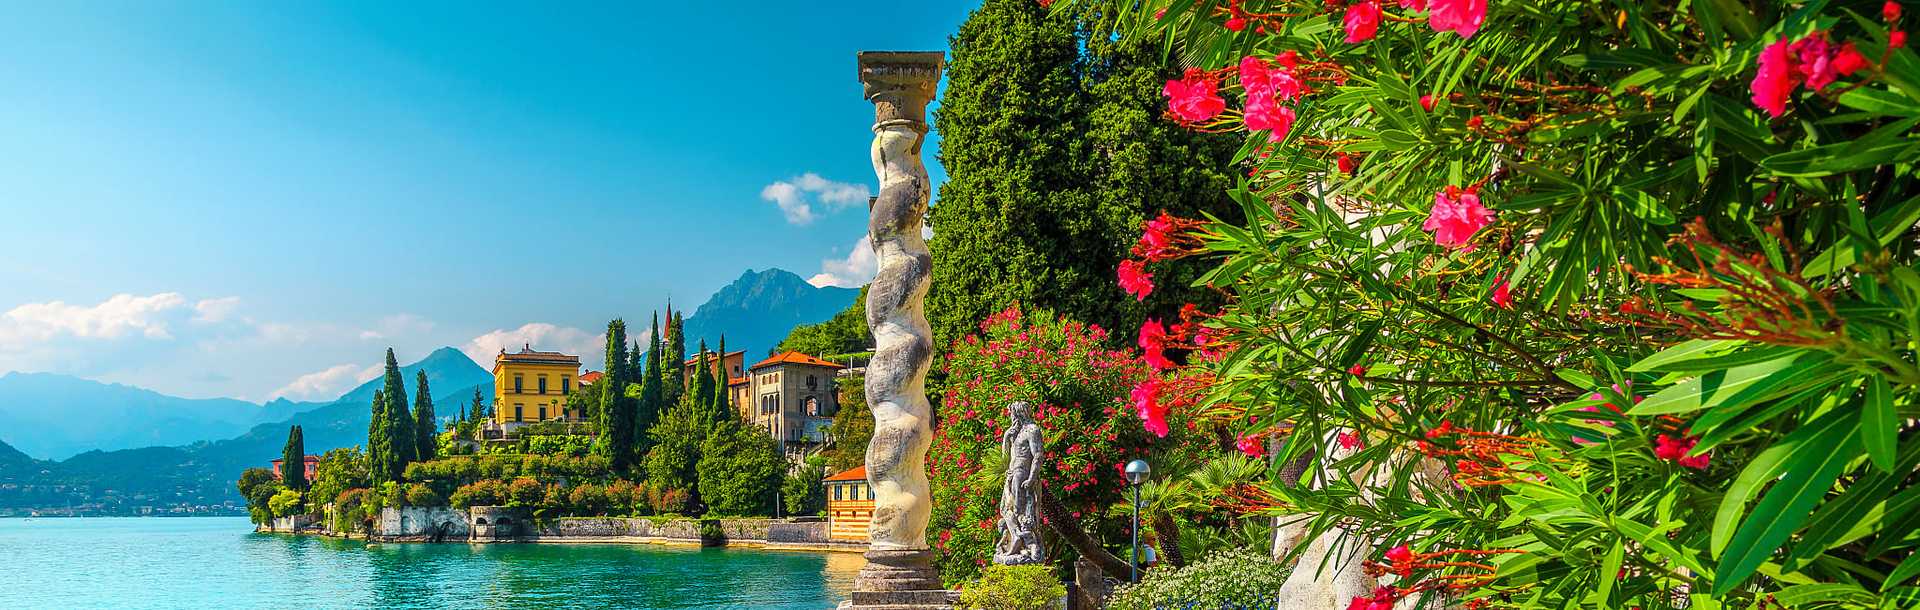 Verenna, Lake Como, Italy